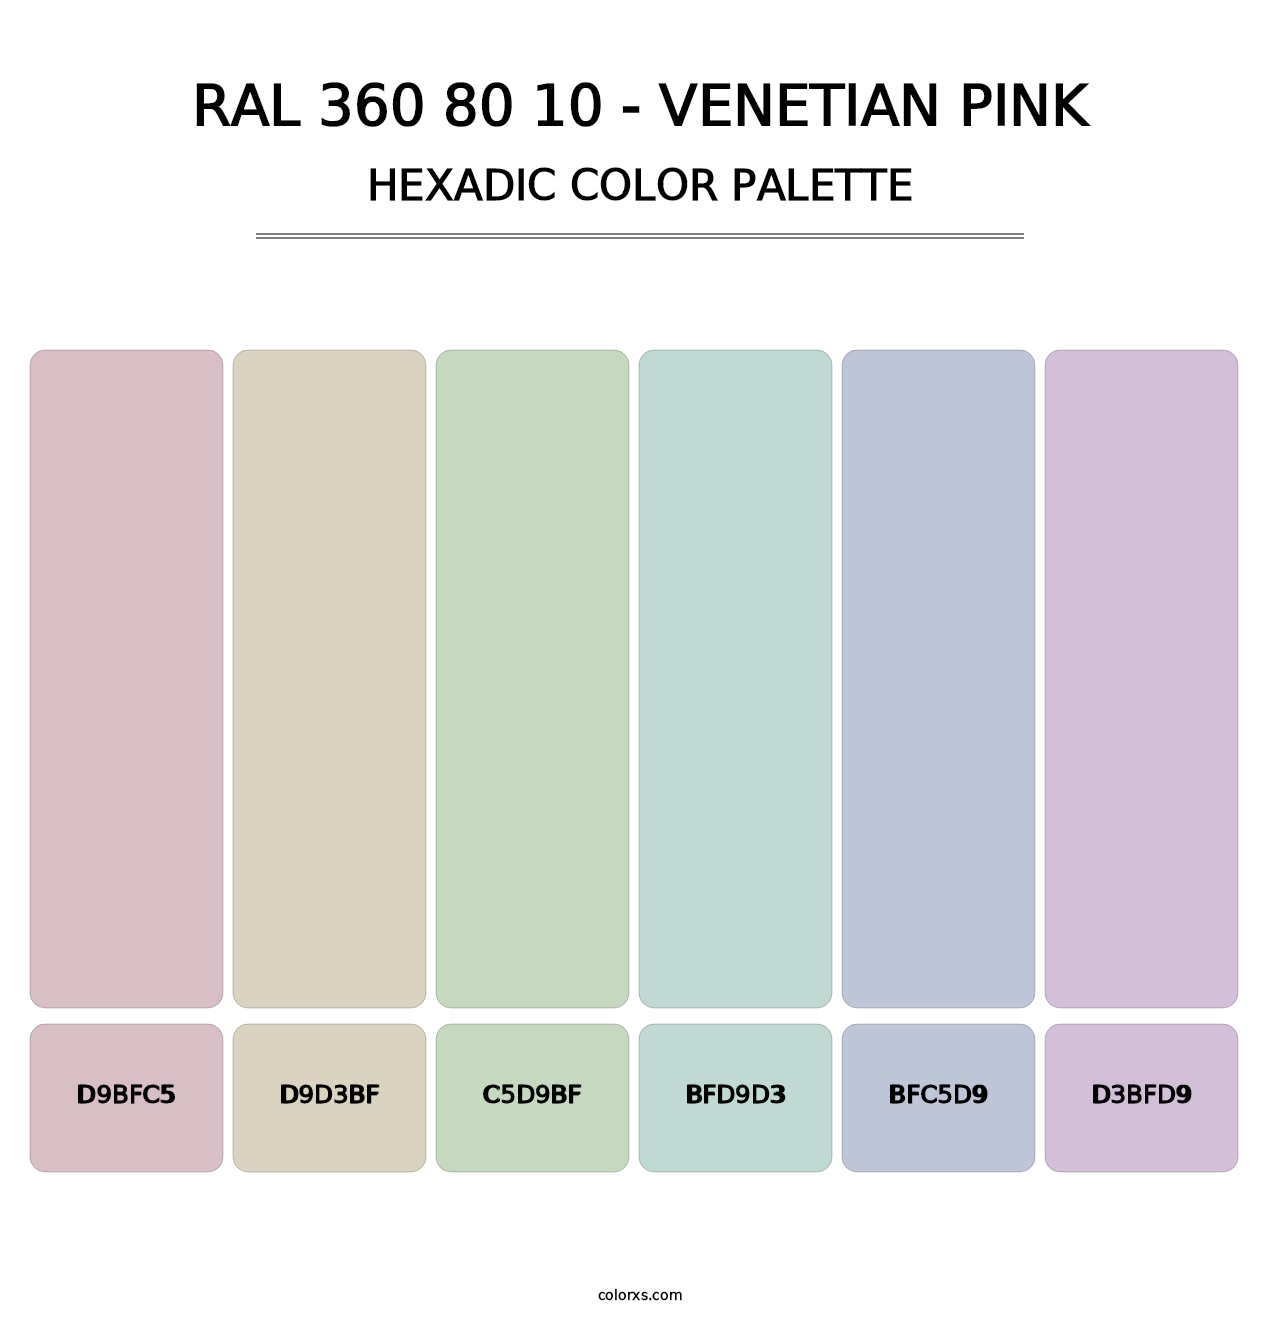 RAL 360 80 10 - Venetian Pink - Hexadic Color Palette